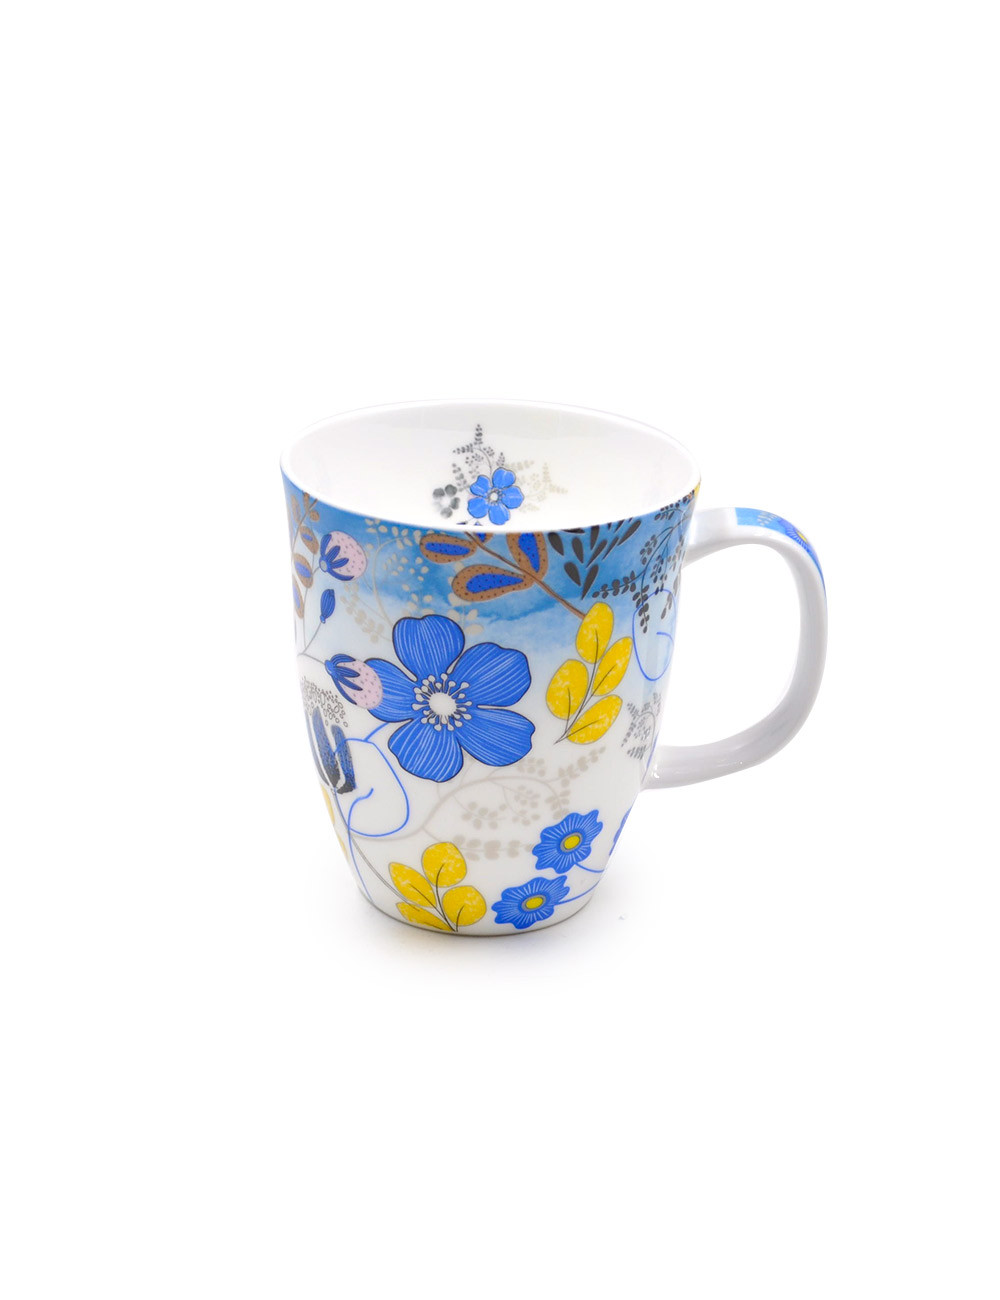 Mug in porcellana Fine Bone China da 350 ml a fiori blu elettrico e giallo - La Pianta del Tè acquista online